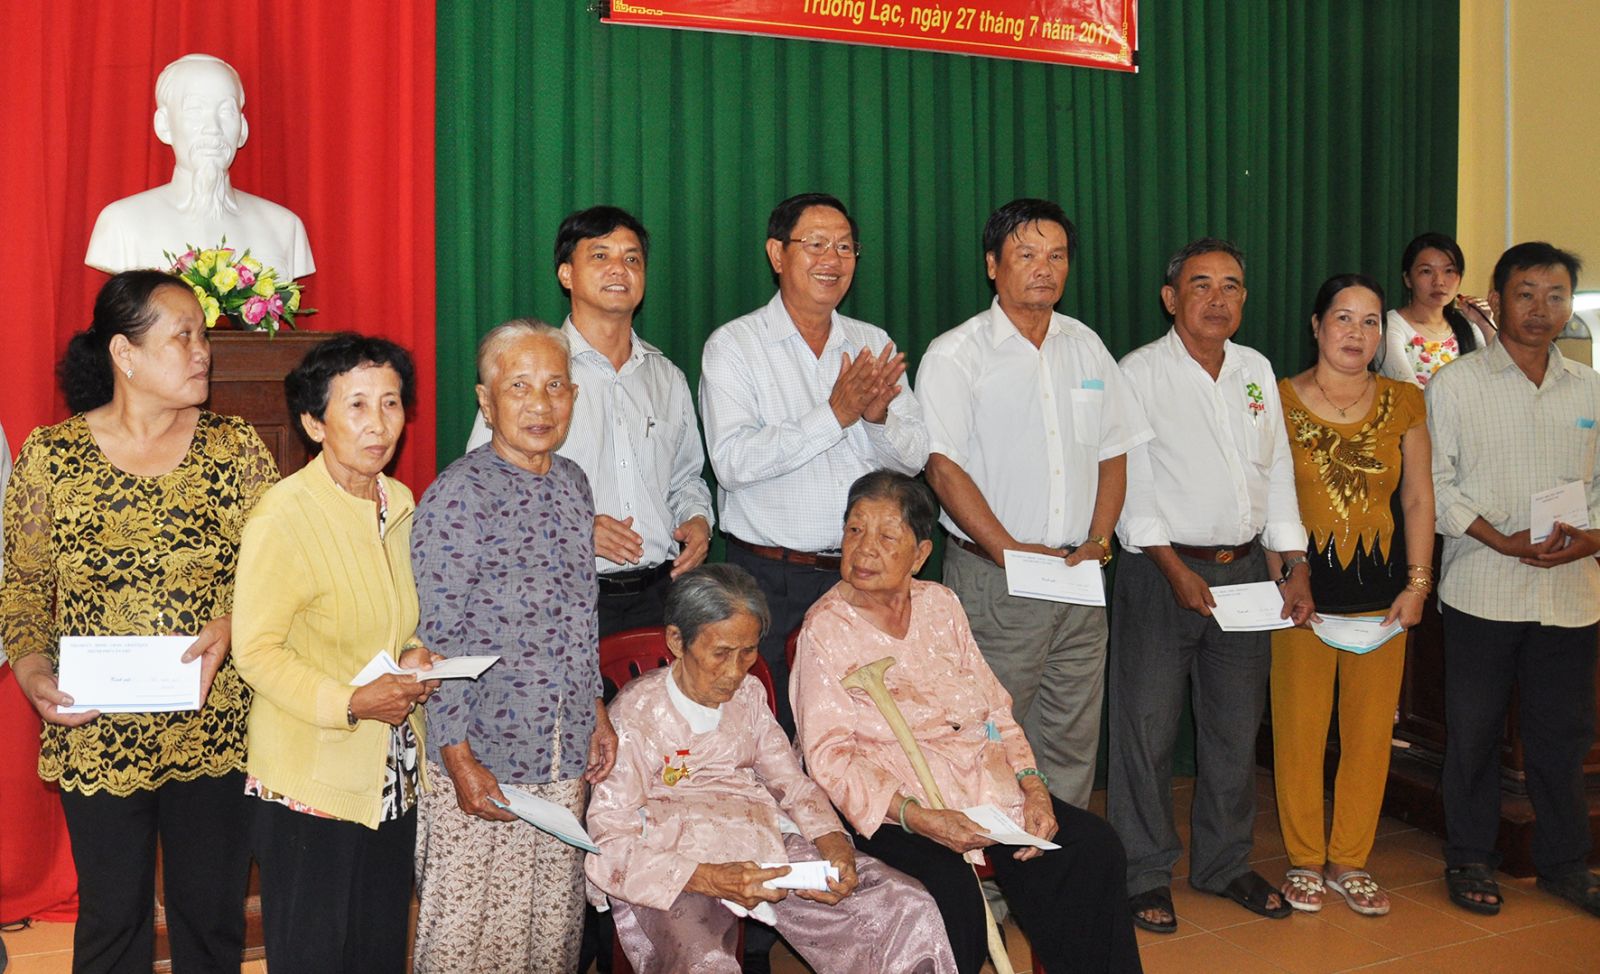 Lãnh đạo TP Cần Thơ và quận Ô Môn trao quà cho gia đình chính sách phường Trường Lạc nhân dịp kỷ niệm 70 năm Ngày Thương binh - Liệt sĩ.